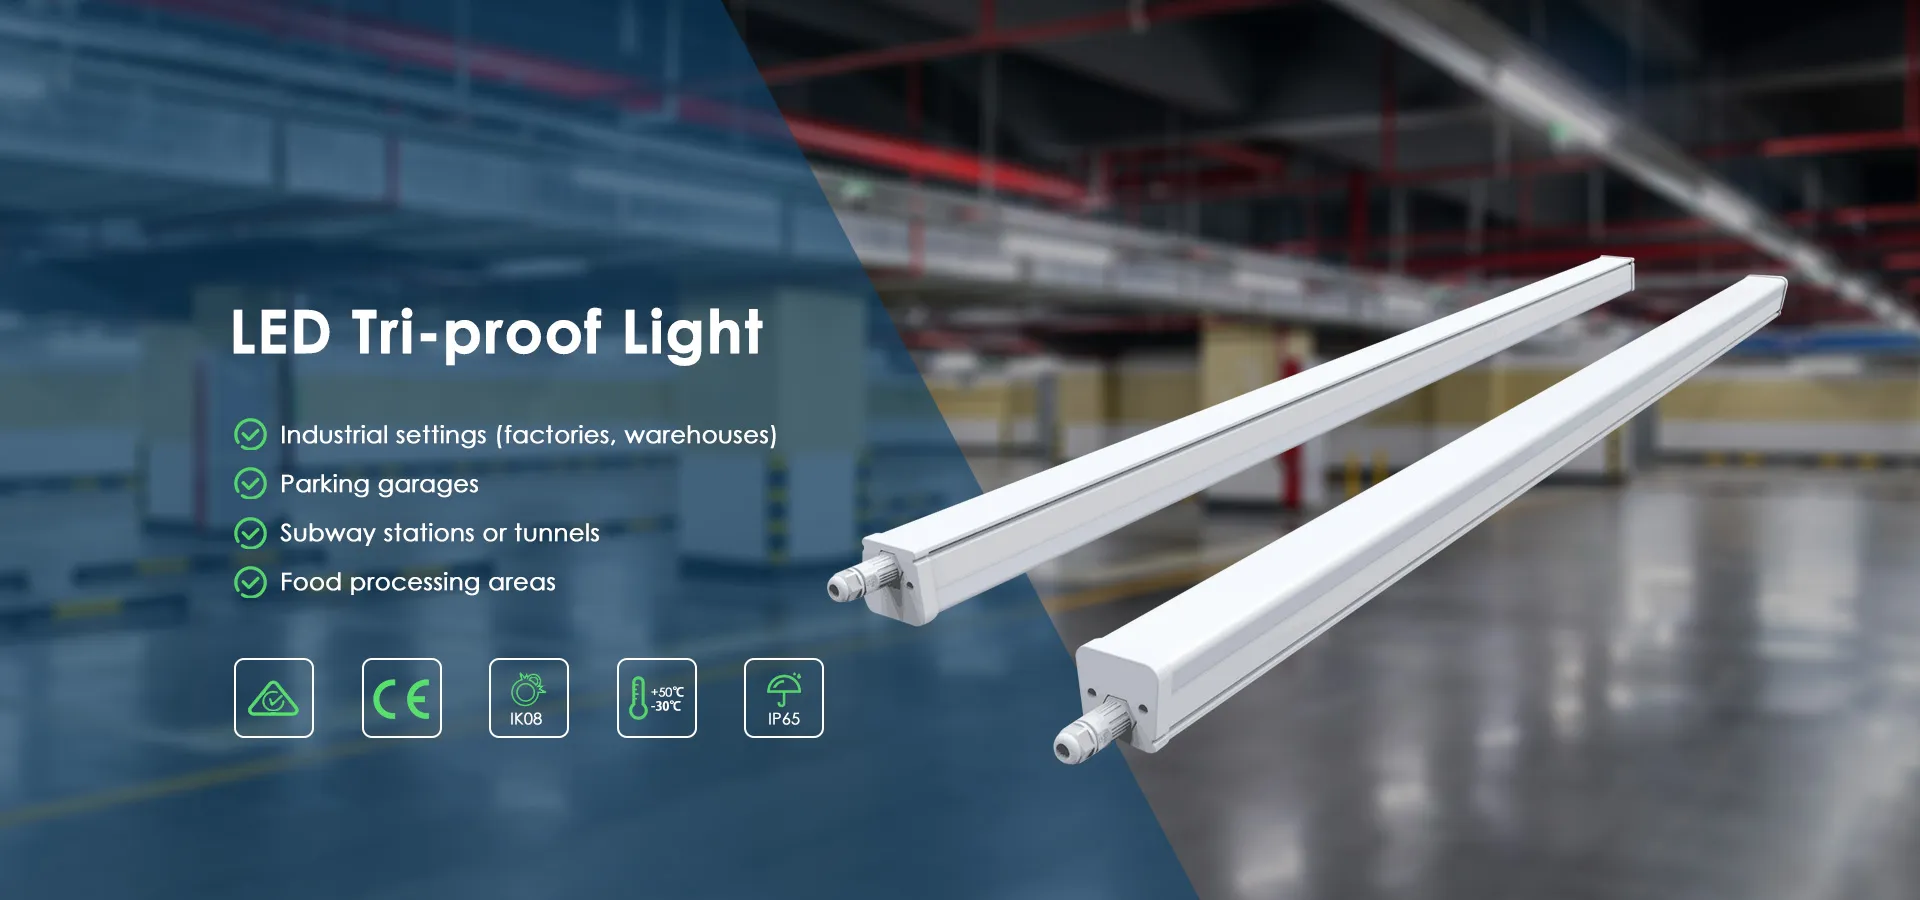 Nhà máy sản xuất đèn LED Triproof